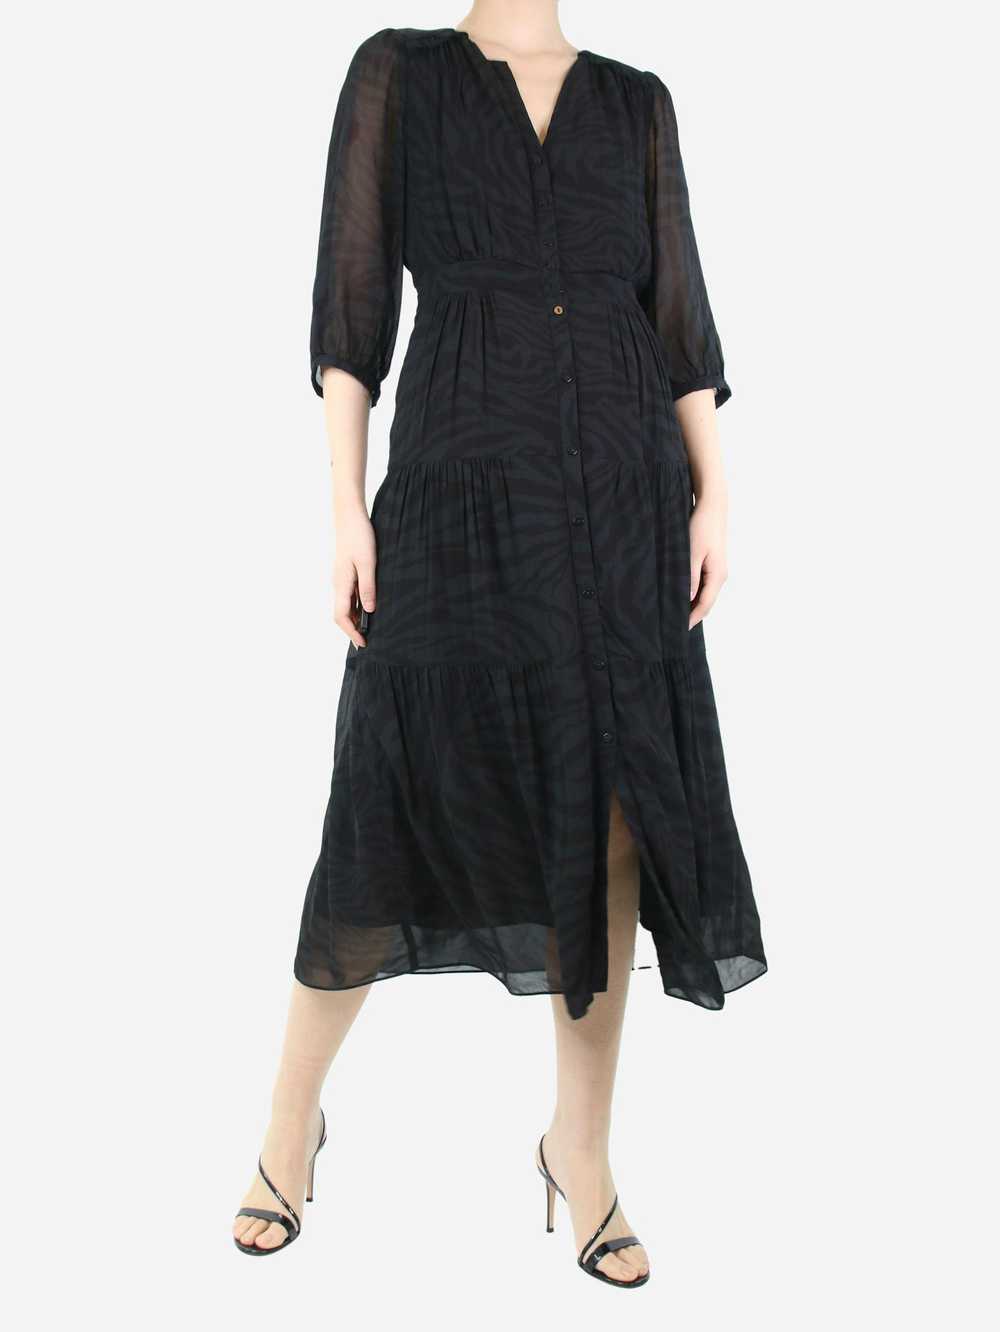 Ba&sh Black tonal patterned dress - size UK 8 - image 3